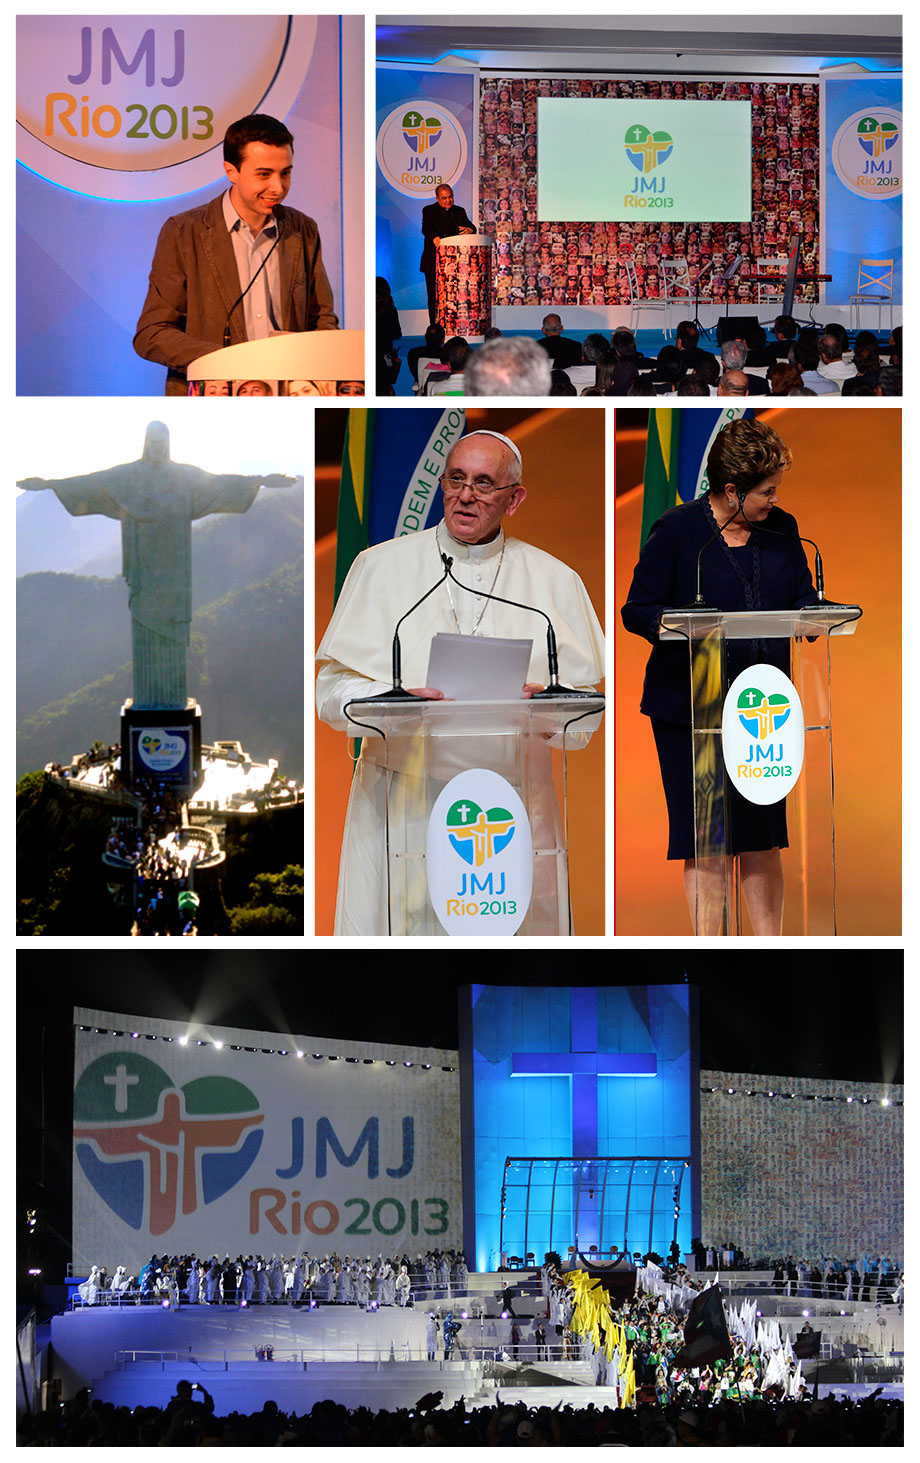 jornada mundial Juventude Rio2013 Rio de Janeiro Católica Igreja Huguenin jmj WYD gmg Catholic Cristo redentor christ